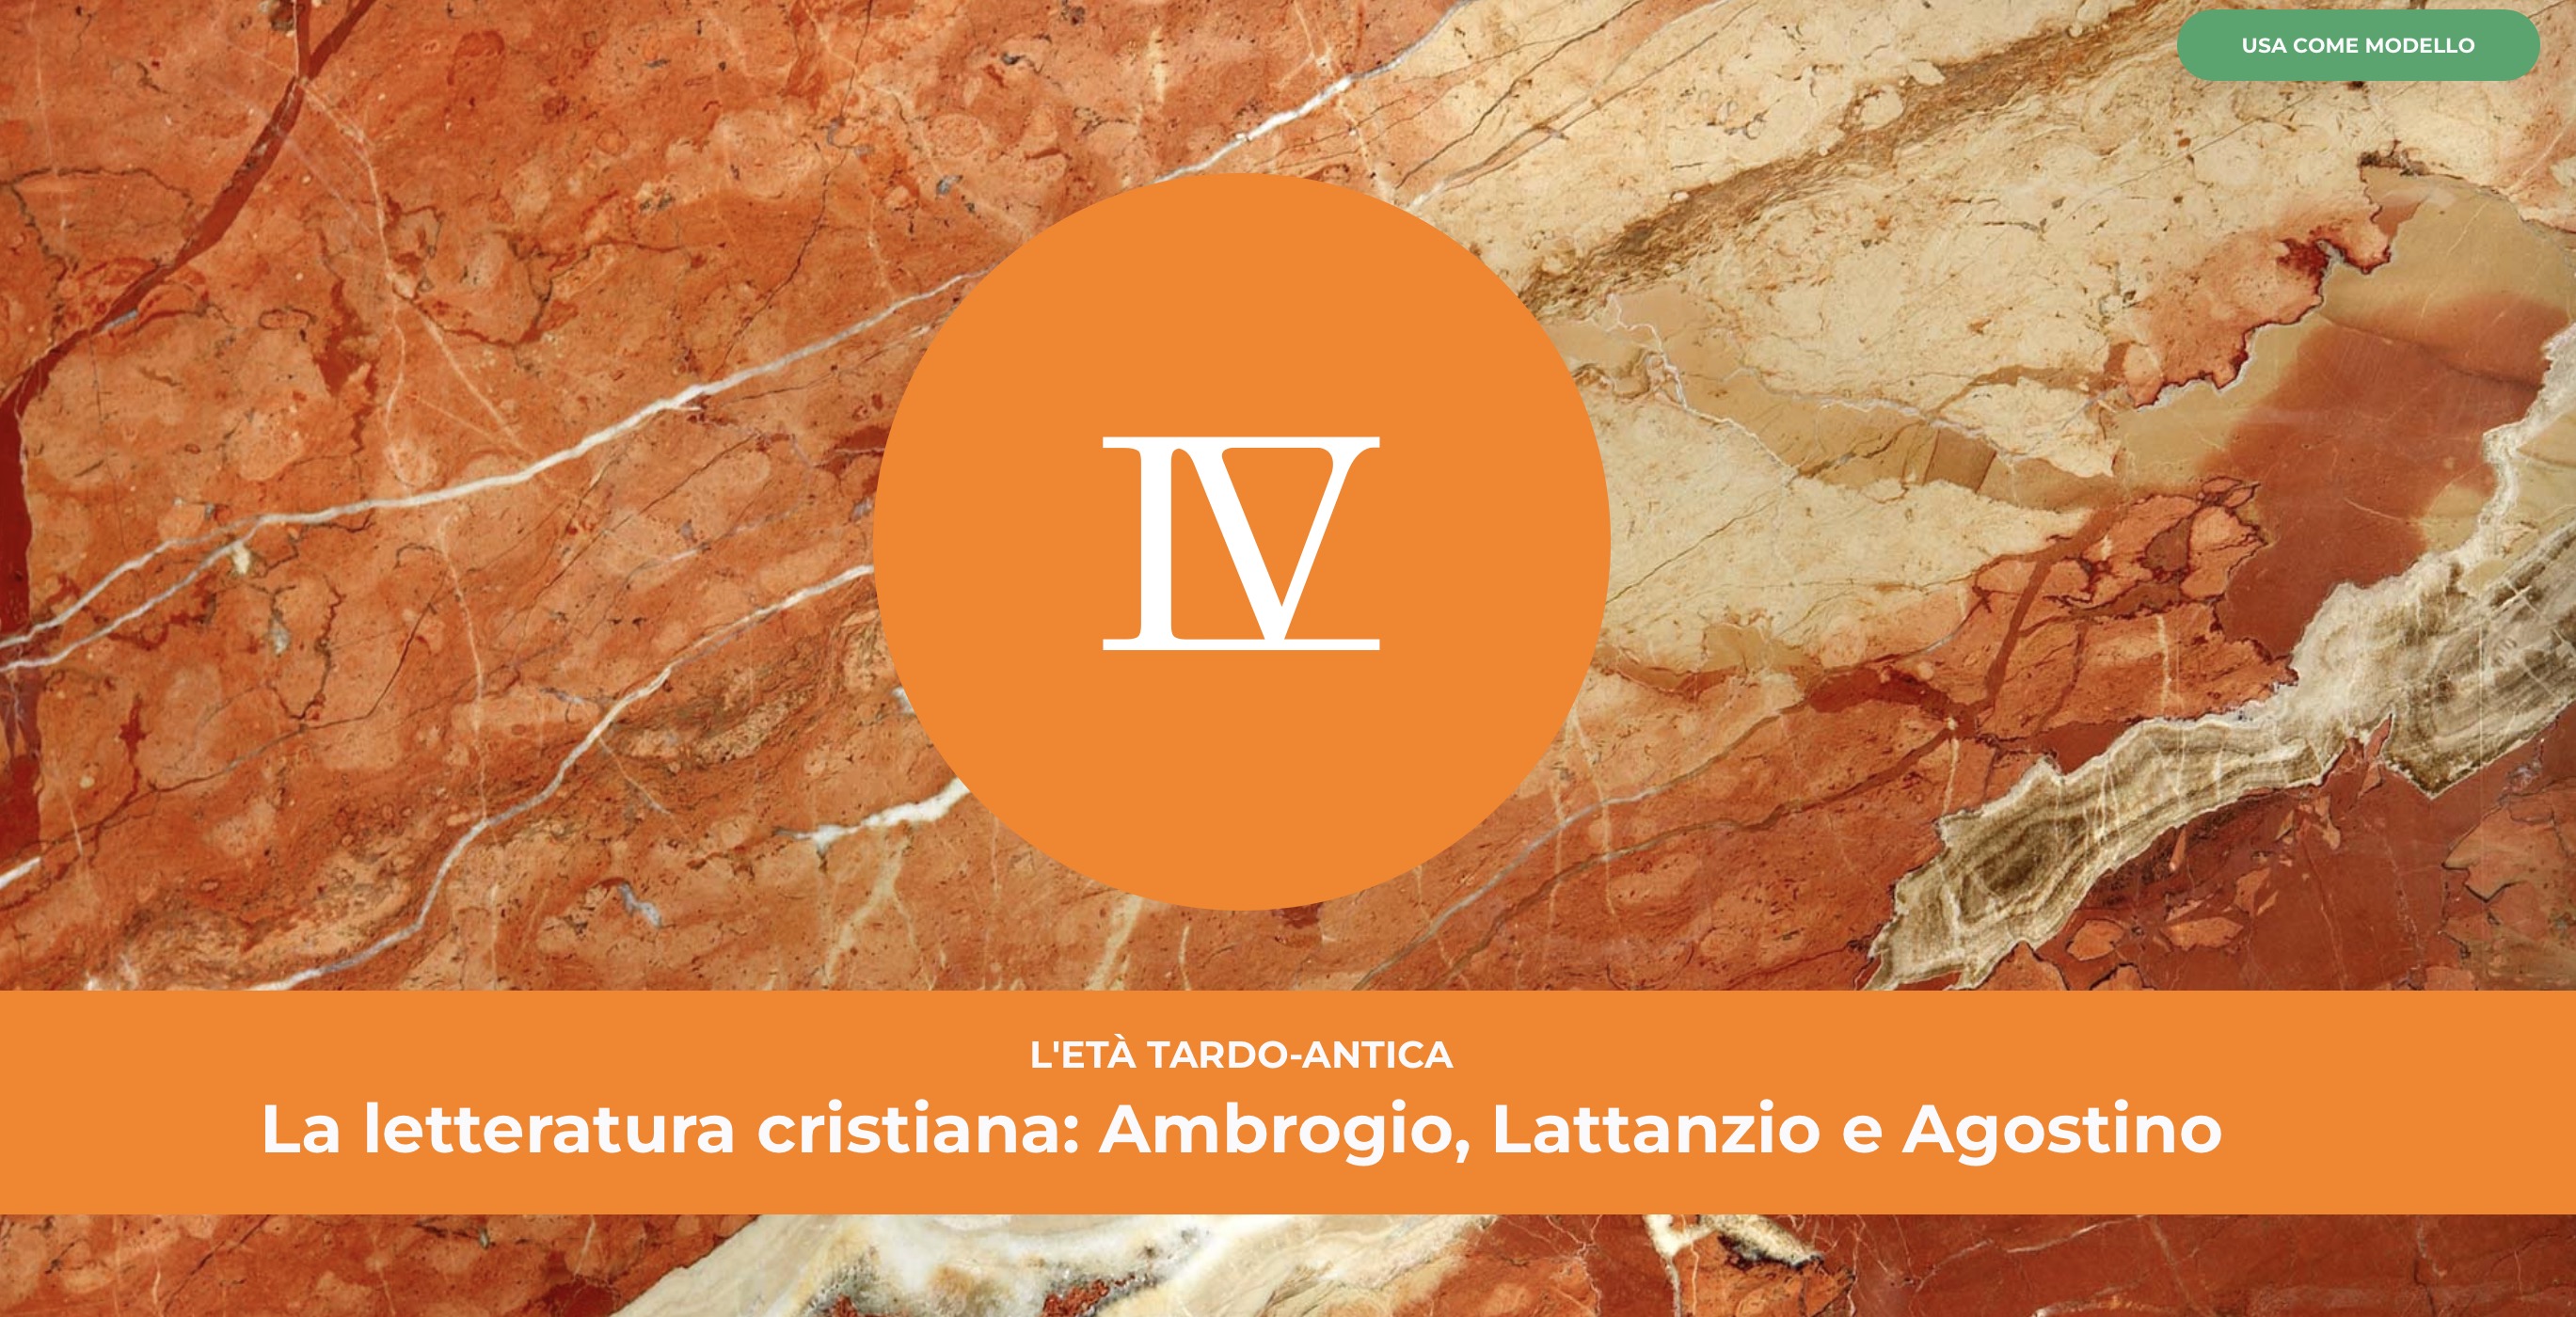 La letteratura cristiana: Ambrogio, Lattanzio e Agostino